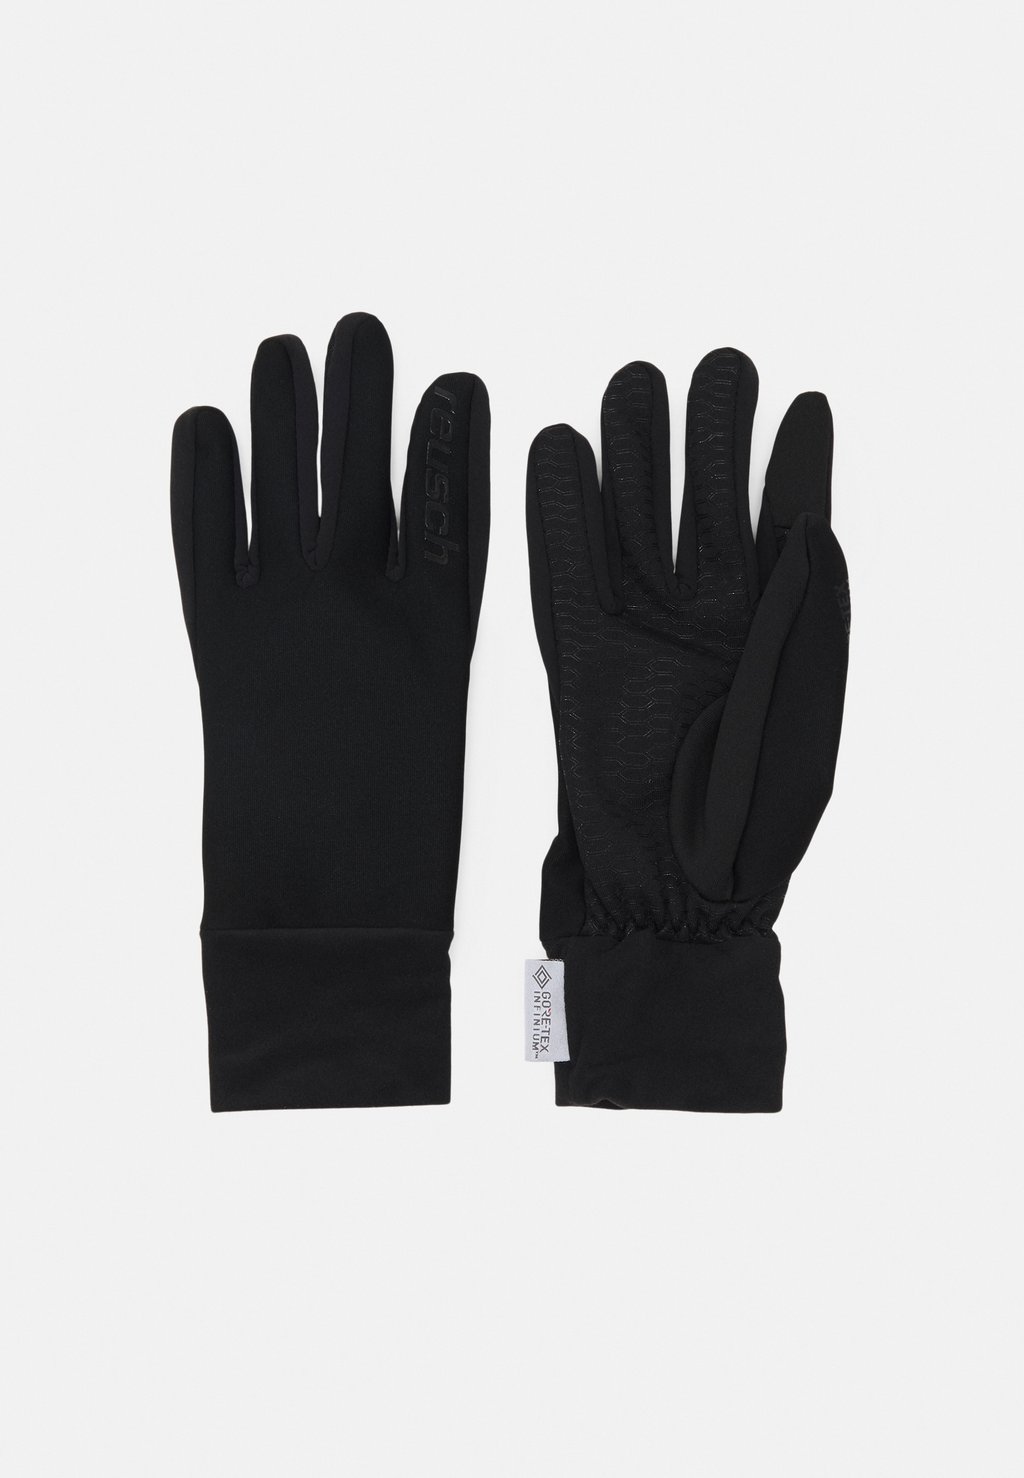 Перчатки KARAYEL GTX INFINIUM UNISEX Reusch, цвет black цена и фото